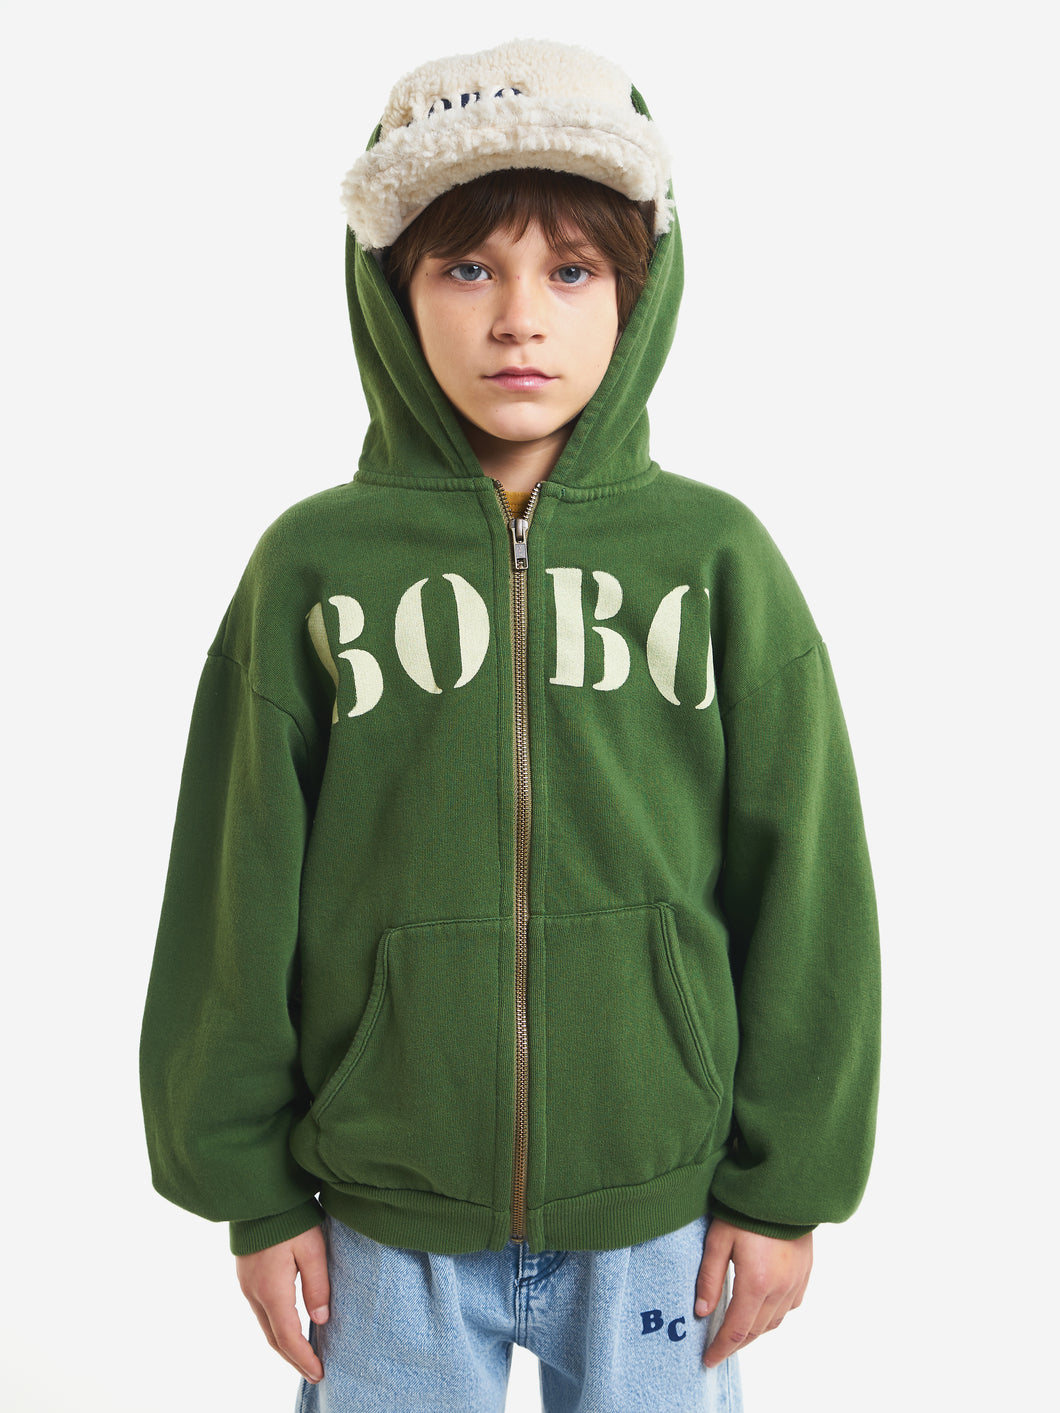 Bobo White hooded sweatshirt / ボボショーズ キッズスェットフーディー パーカー ロゴ